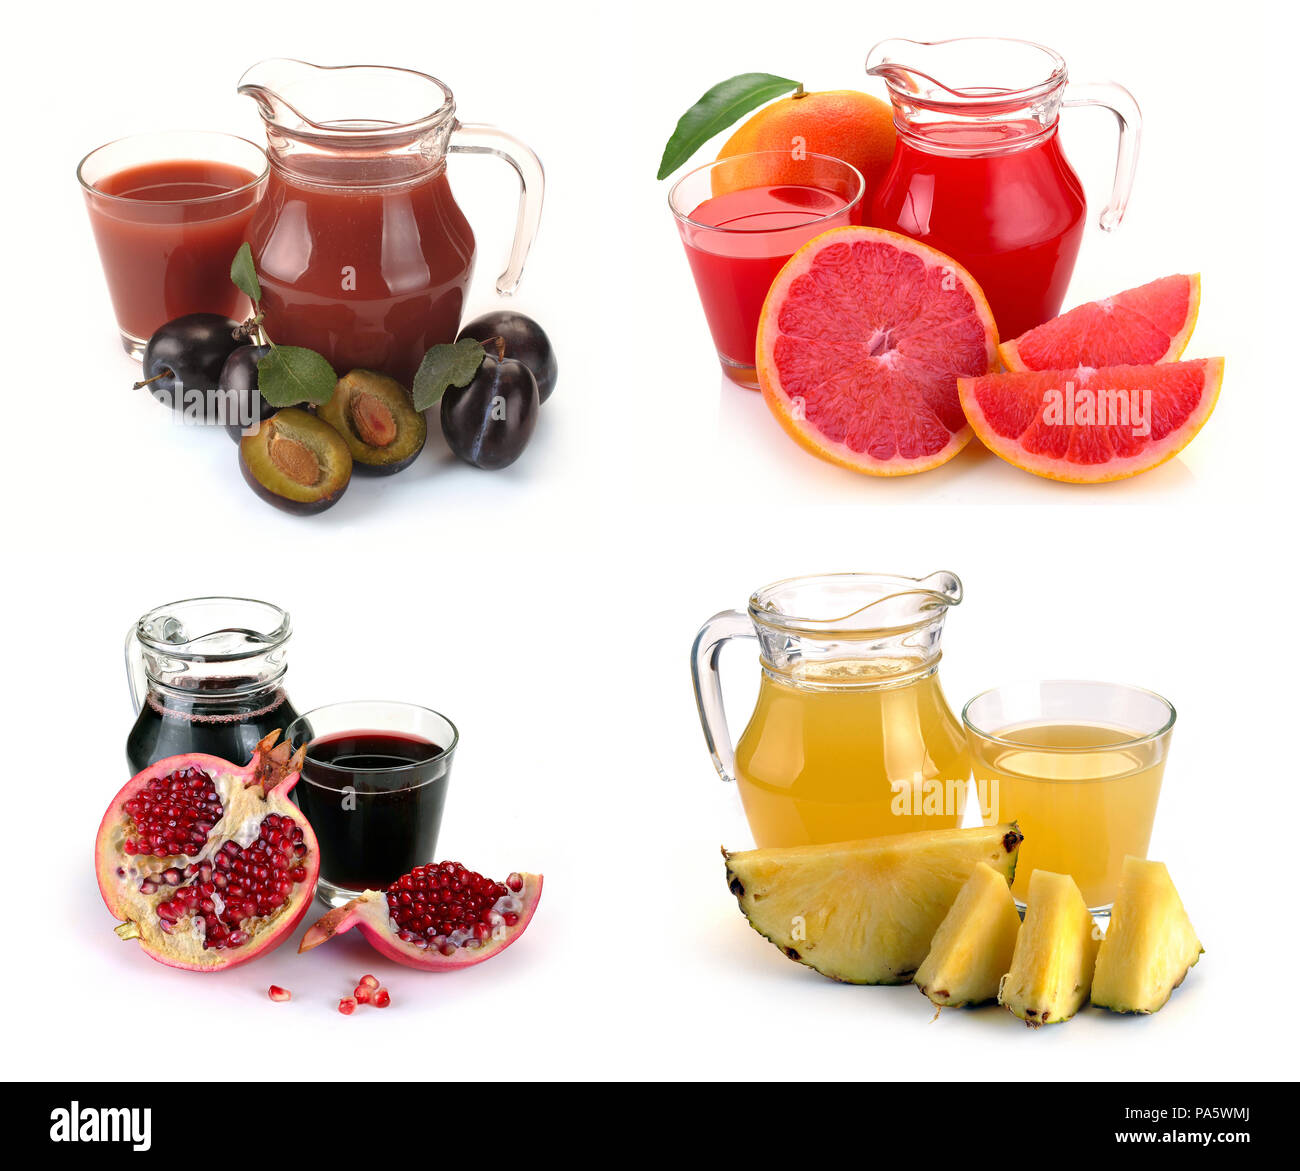 Mettre le verre et pichet de jus de fruits sur fond blanc Banque D'Images